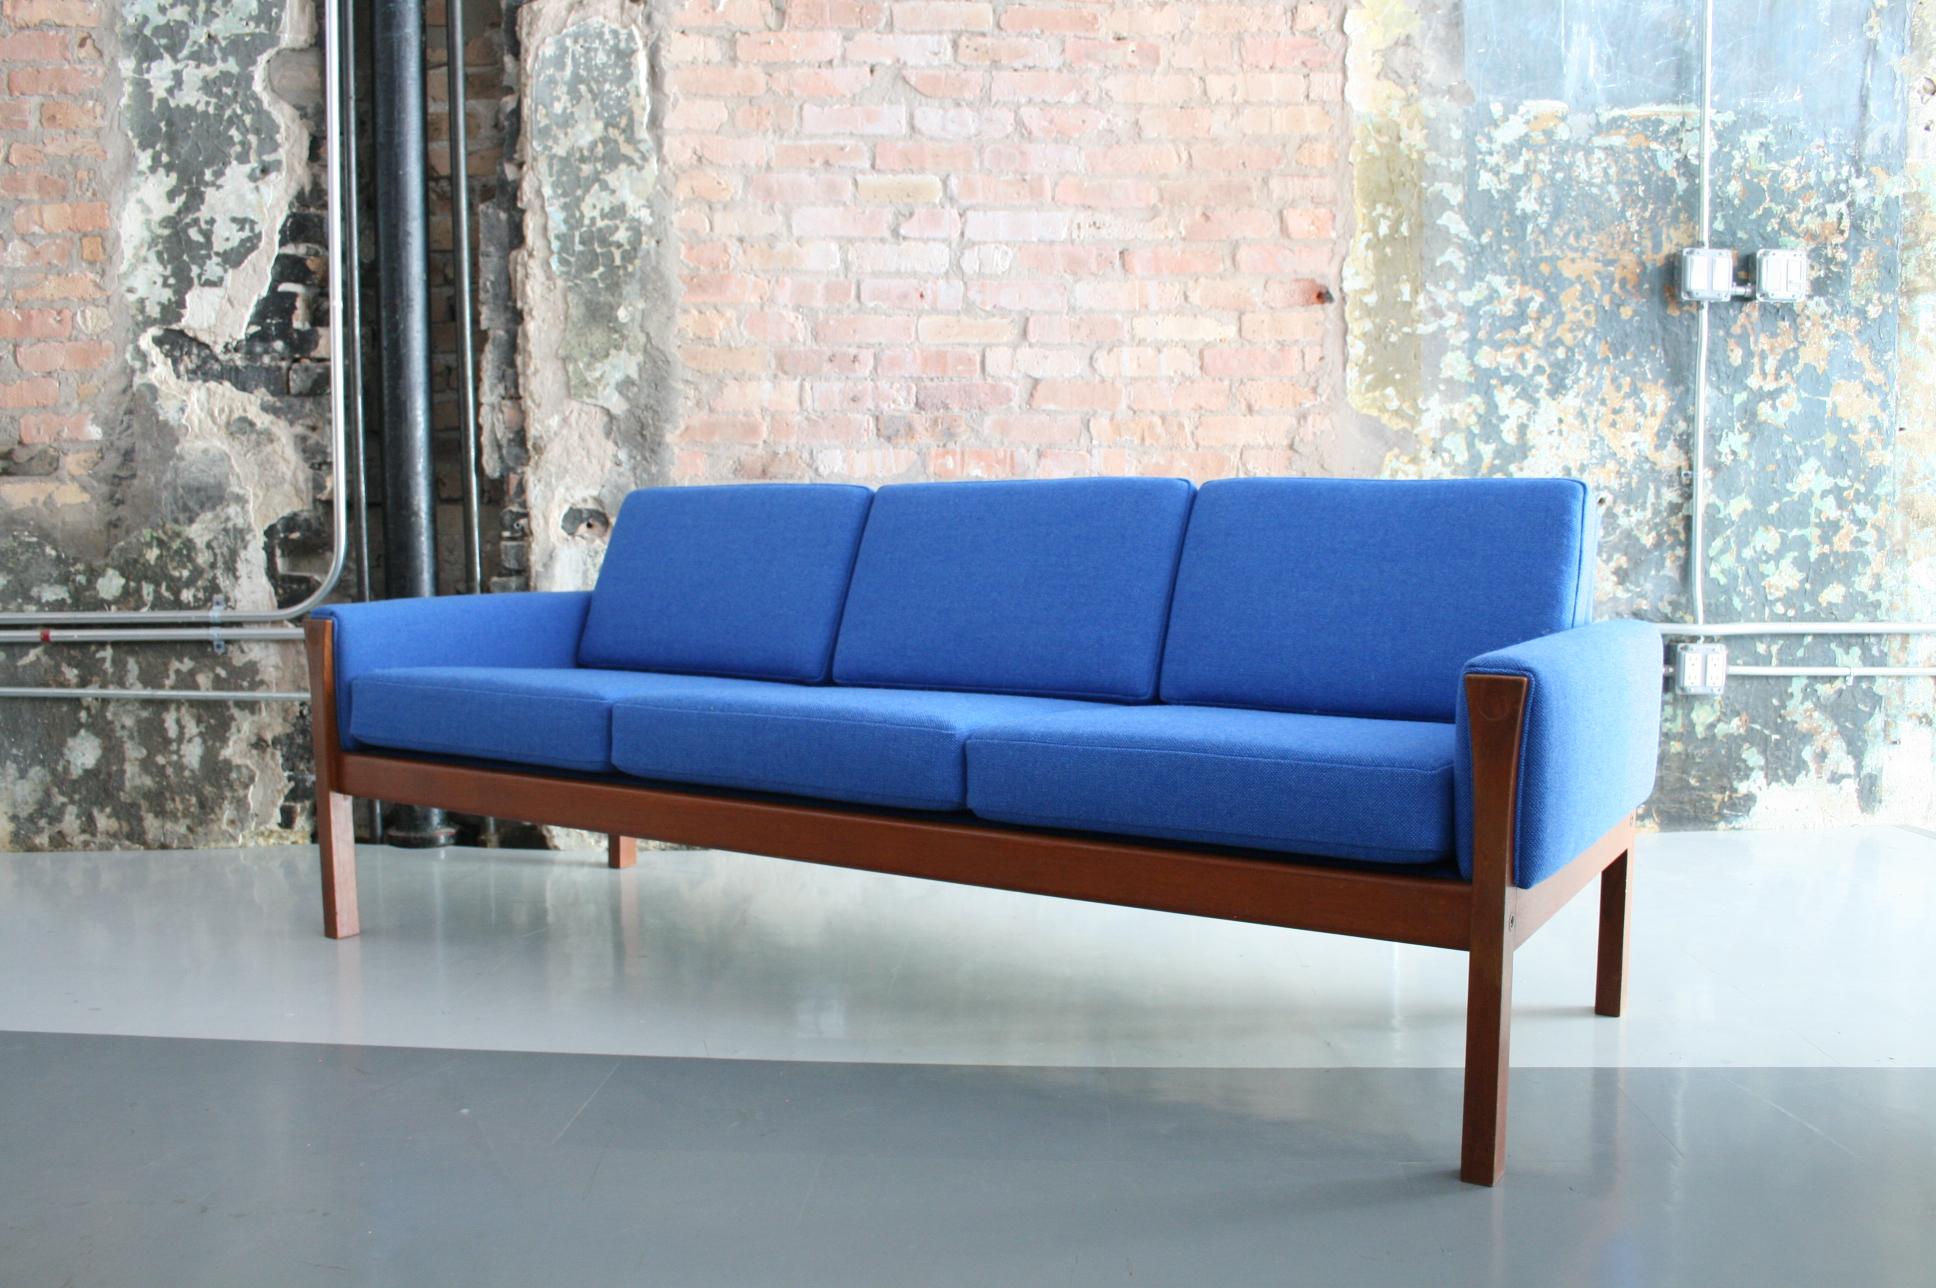 Teak Original Sofa by Hans Wegner for Carl Hansen & Son 1960, Denmark